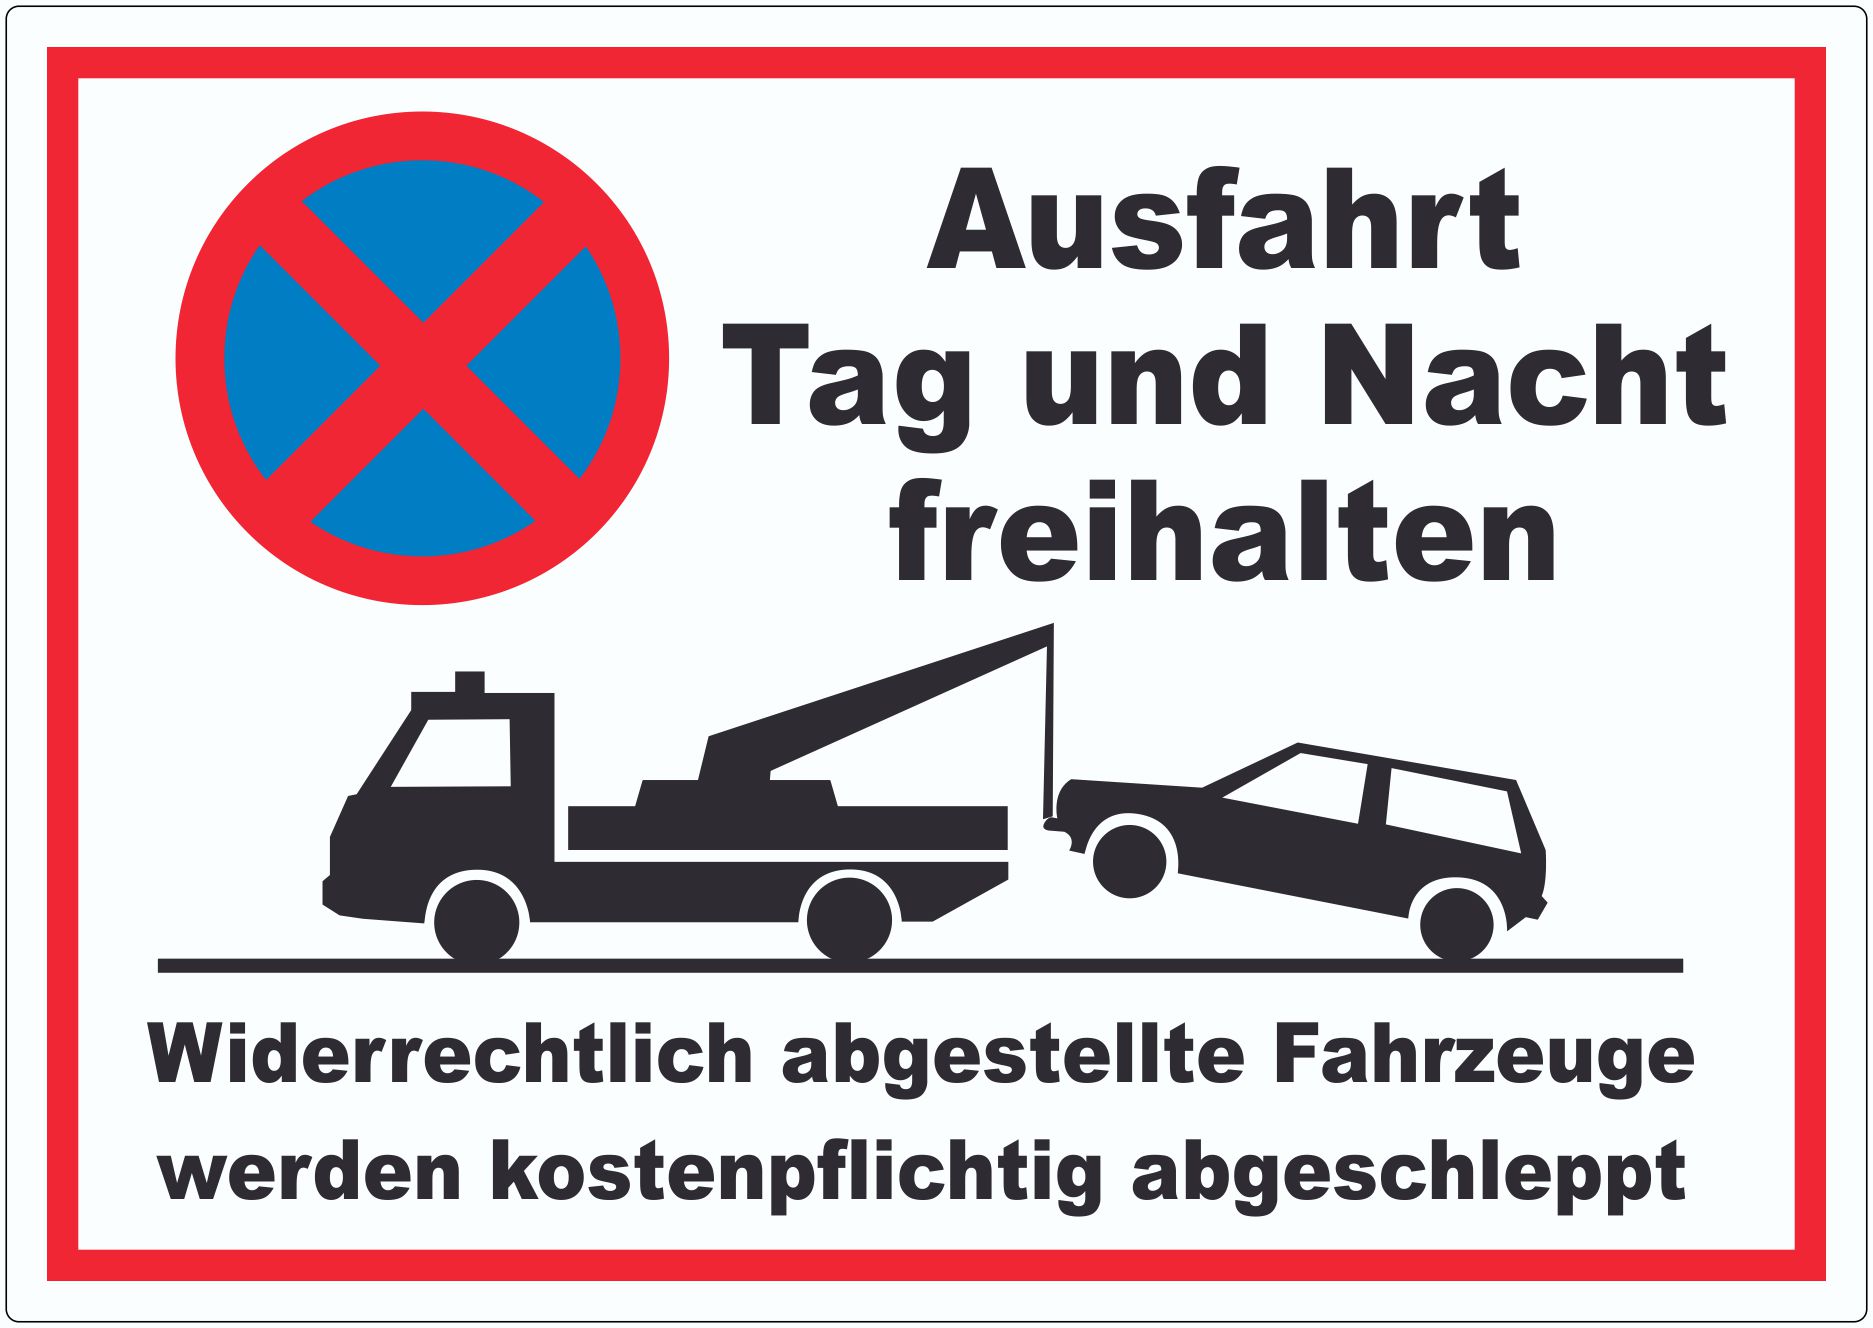 Parken verboten Ausfahrt Tag und Nacht freihalten Aufkleber 